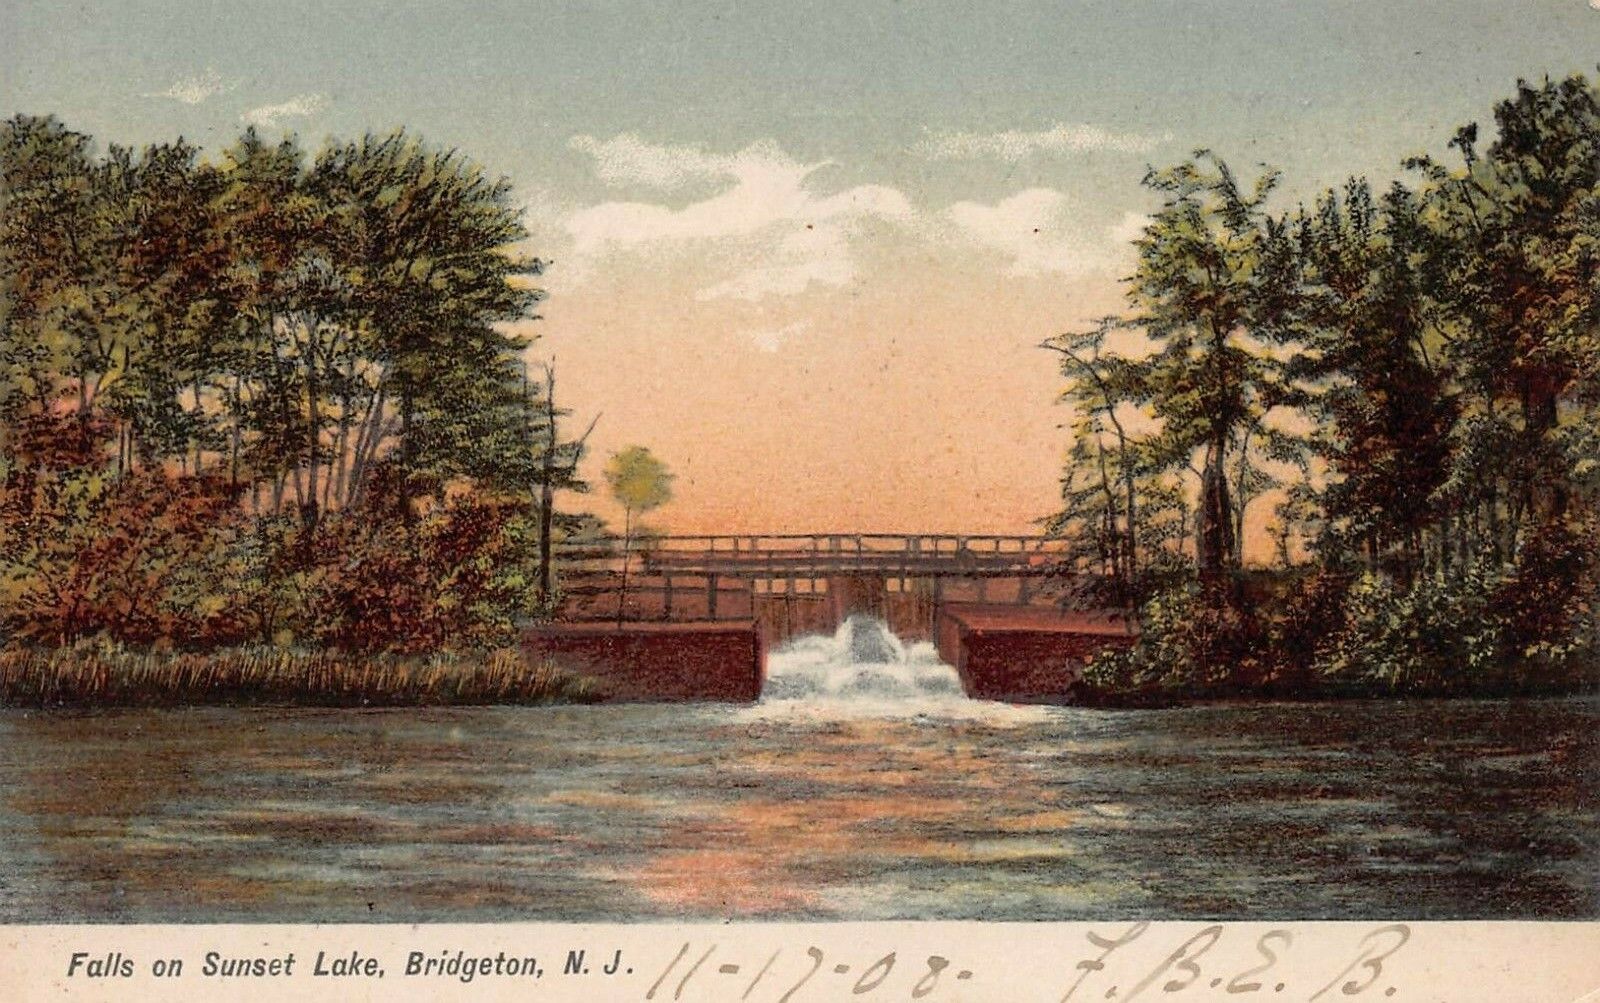 Falls on Sunset Lake, Bridgeton, N.J., 1908 Postcard, Unused 